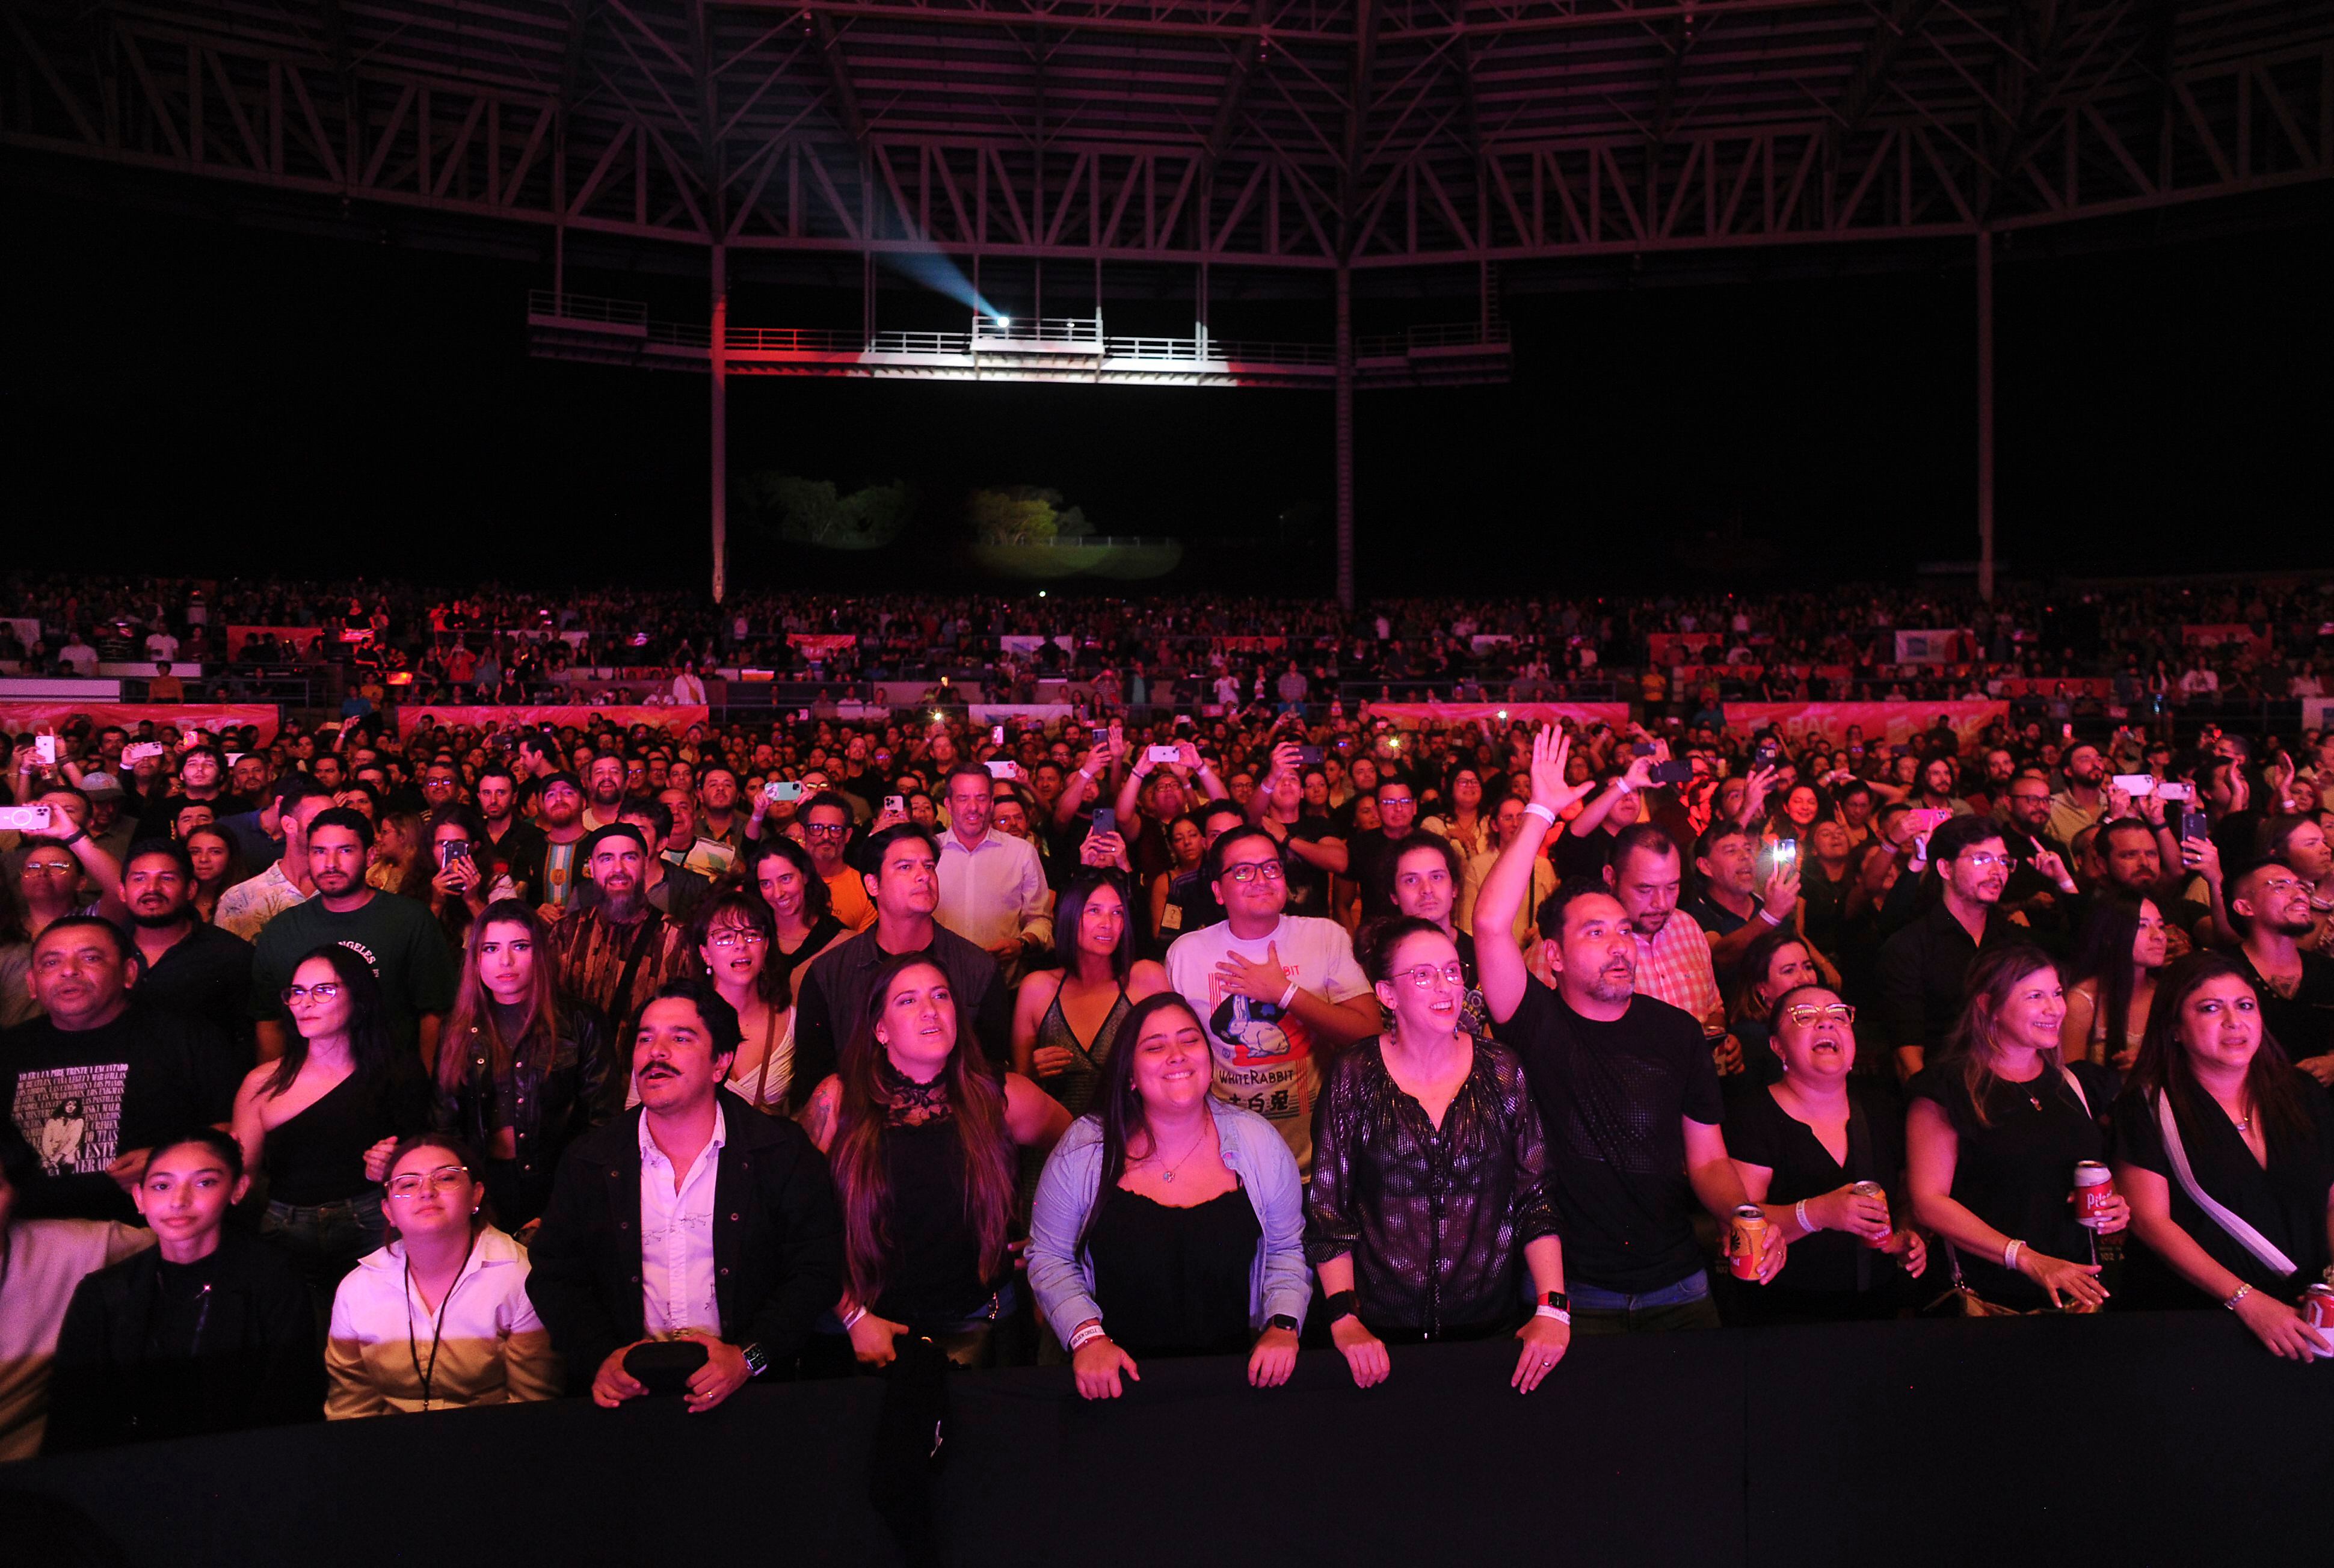 Más de 5.000 personas se reunieron en Parque Viva para cantar con Fito Páez en Costa Rica. La canción de 'El amor después del amor' estuvo en el repertorio. Foto: Jorge Navarro.